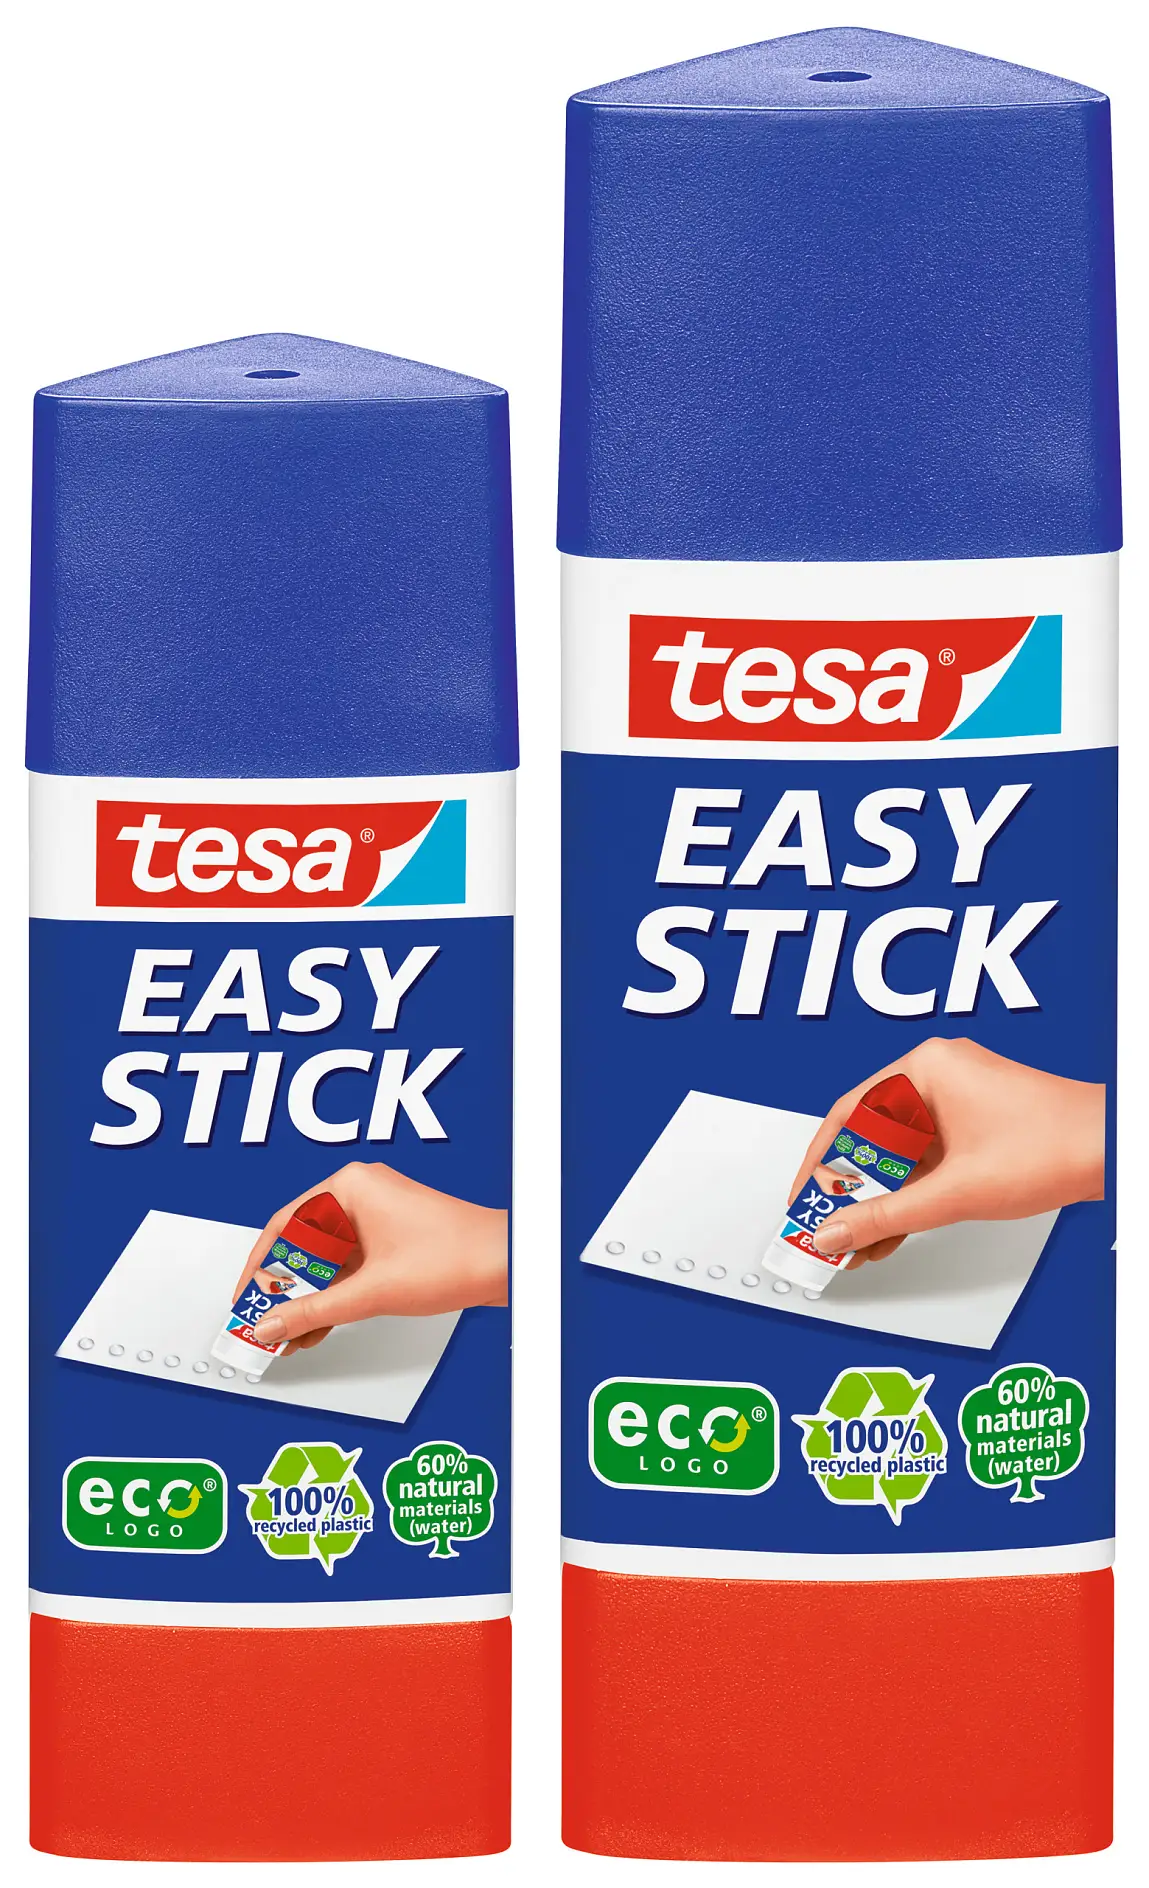 57030-00200 und 57272-002004042448073532 und 4042448073150tesa eco Easy Stick 25g und tesa eco Easy Stick 12g